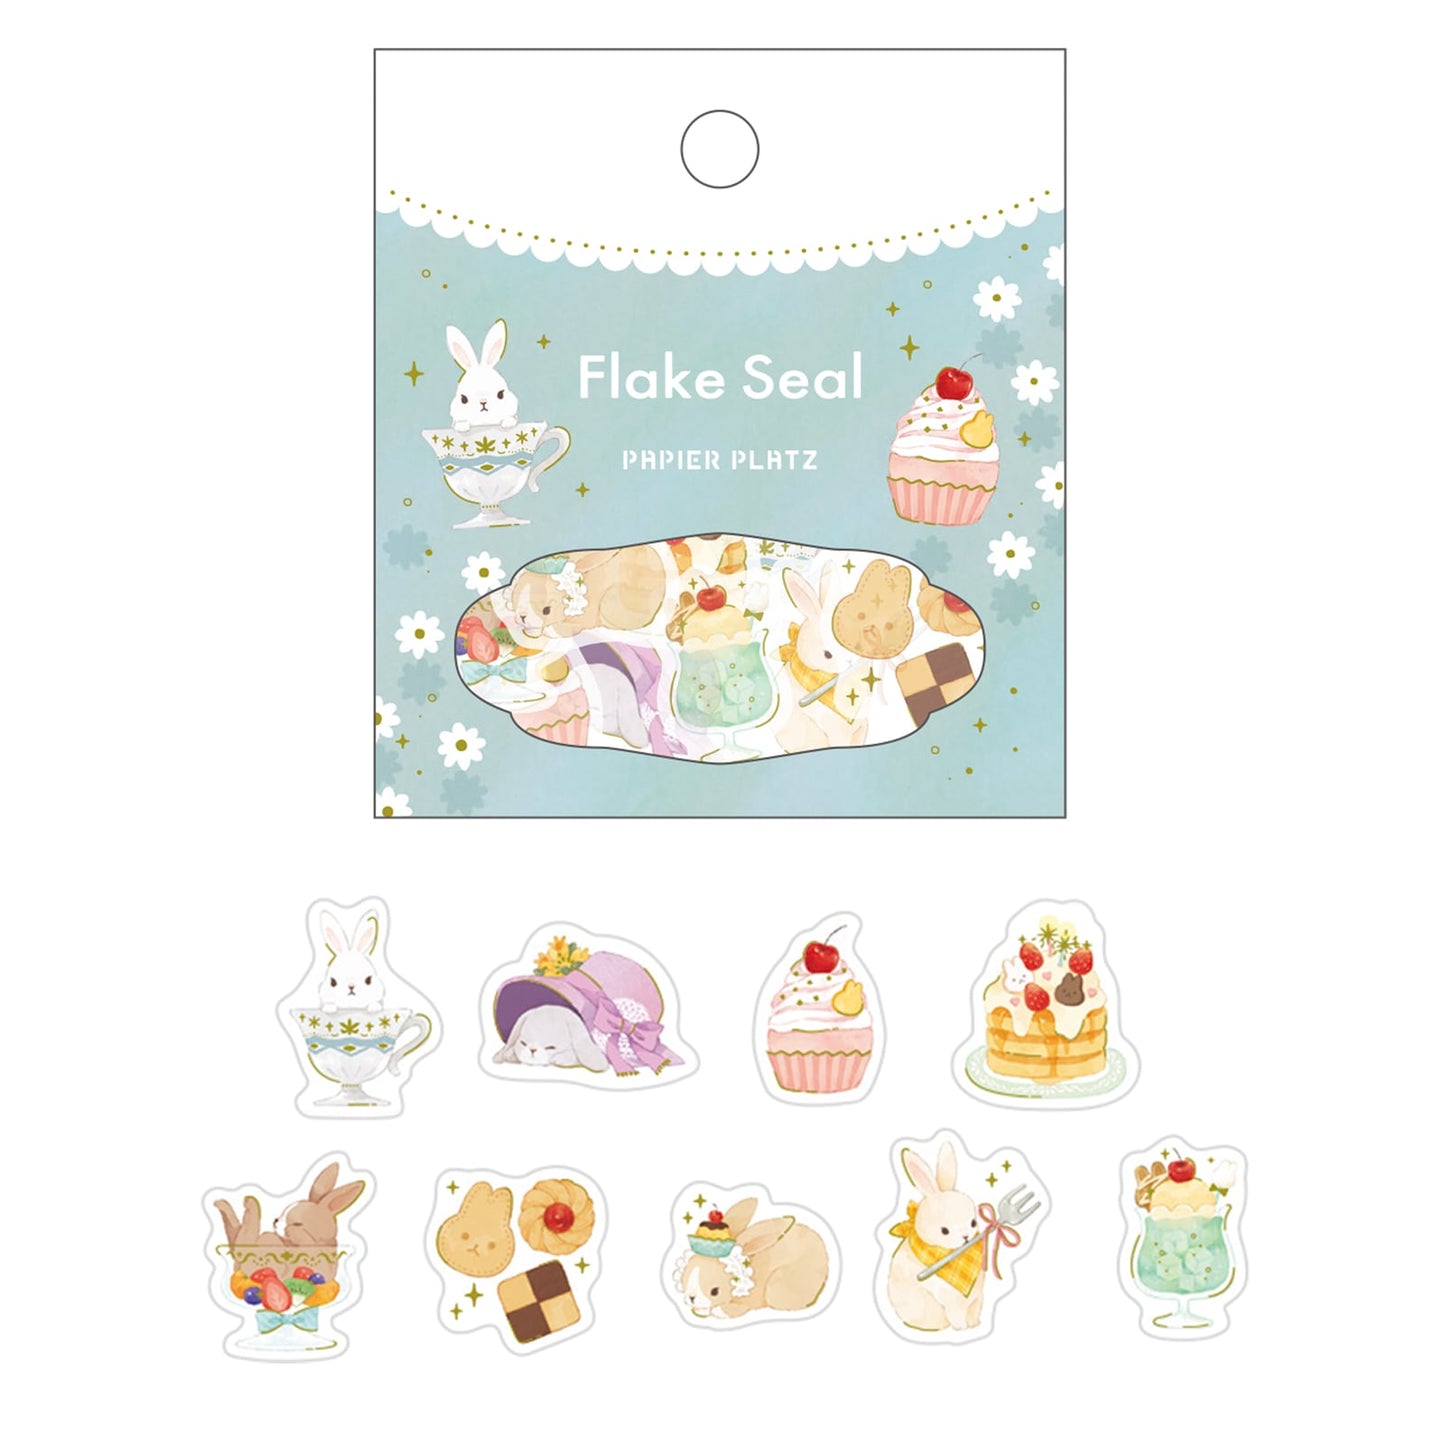 Papier Platz Gold Foil Sticker Packet - Sweet Bunny